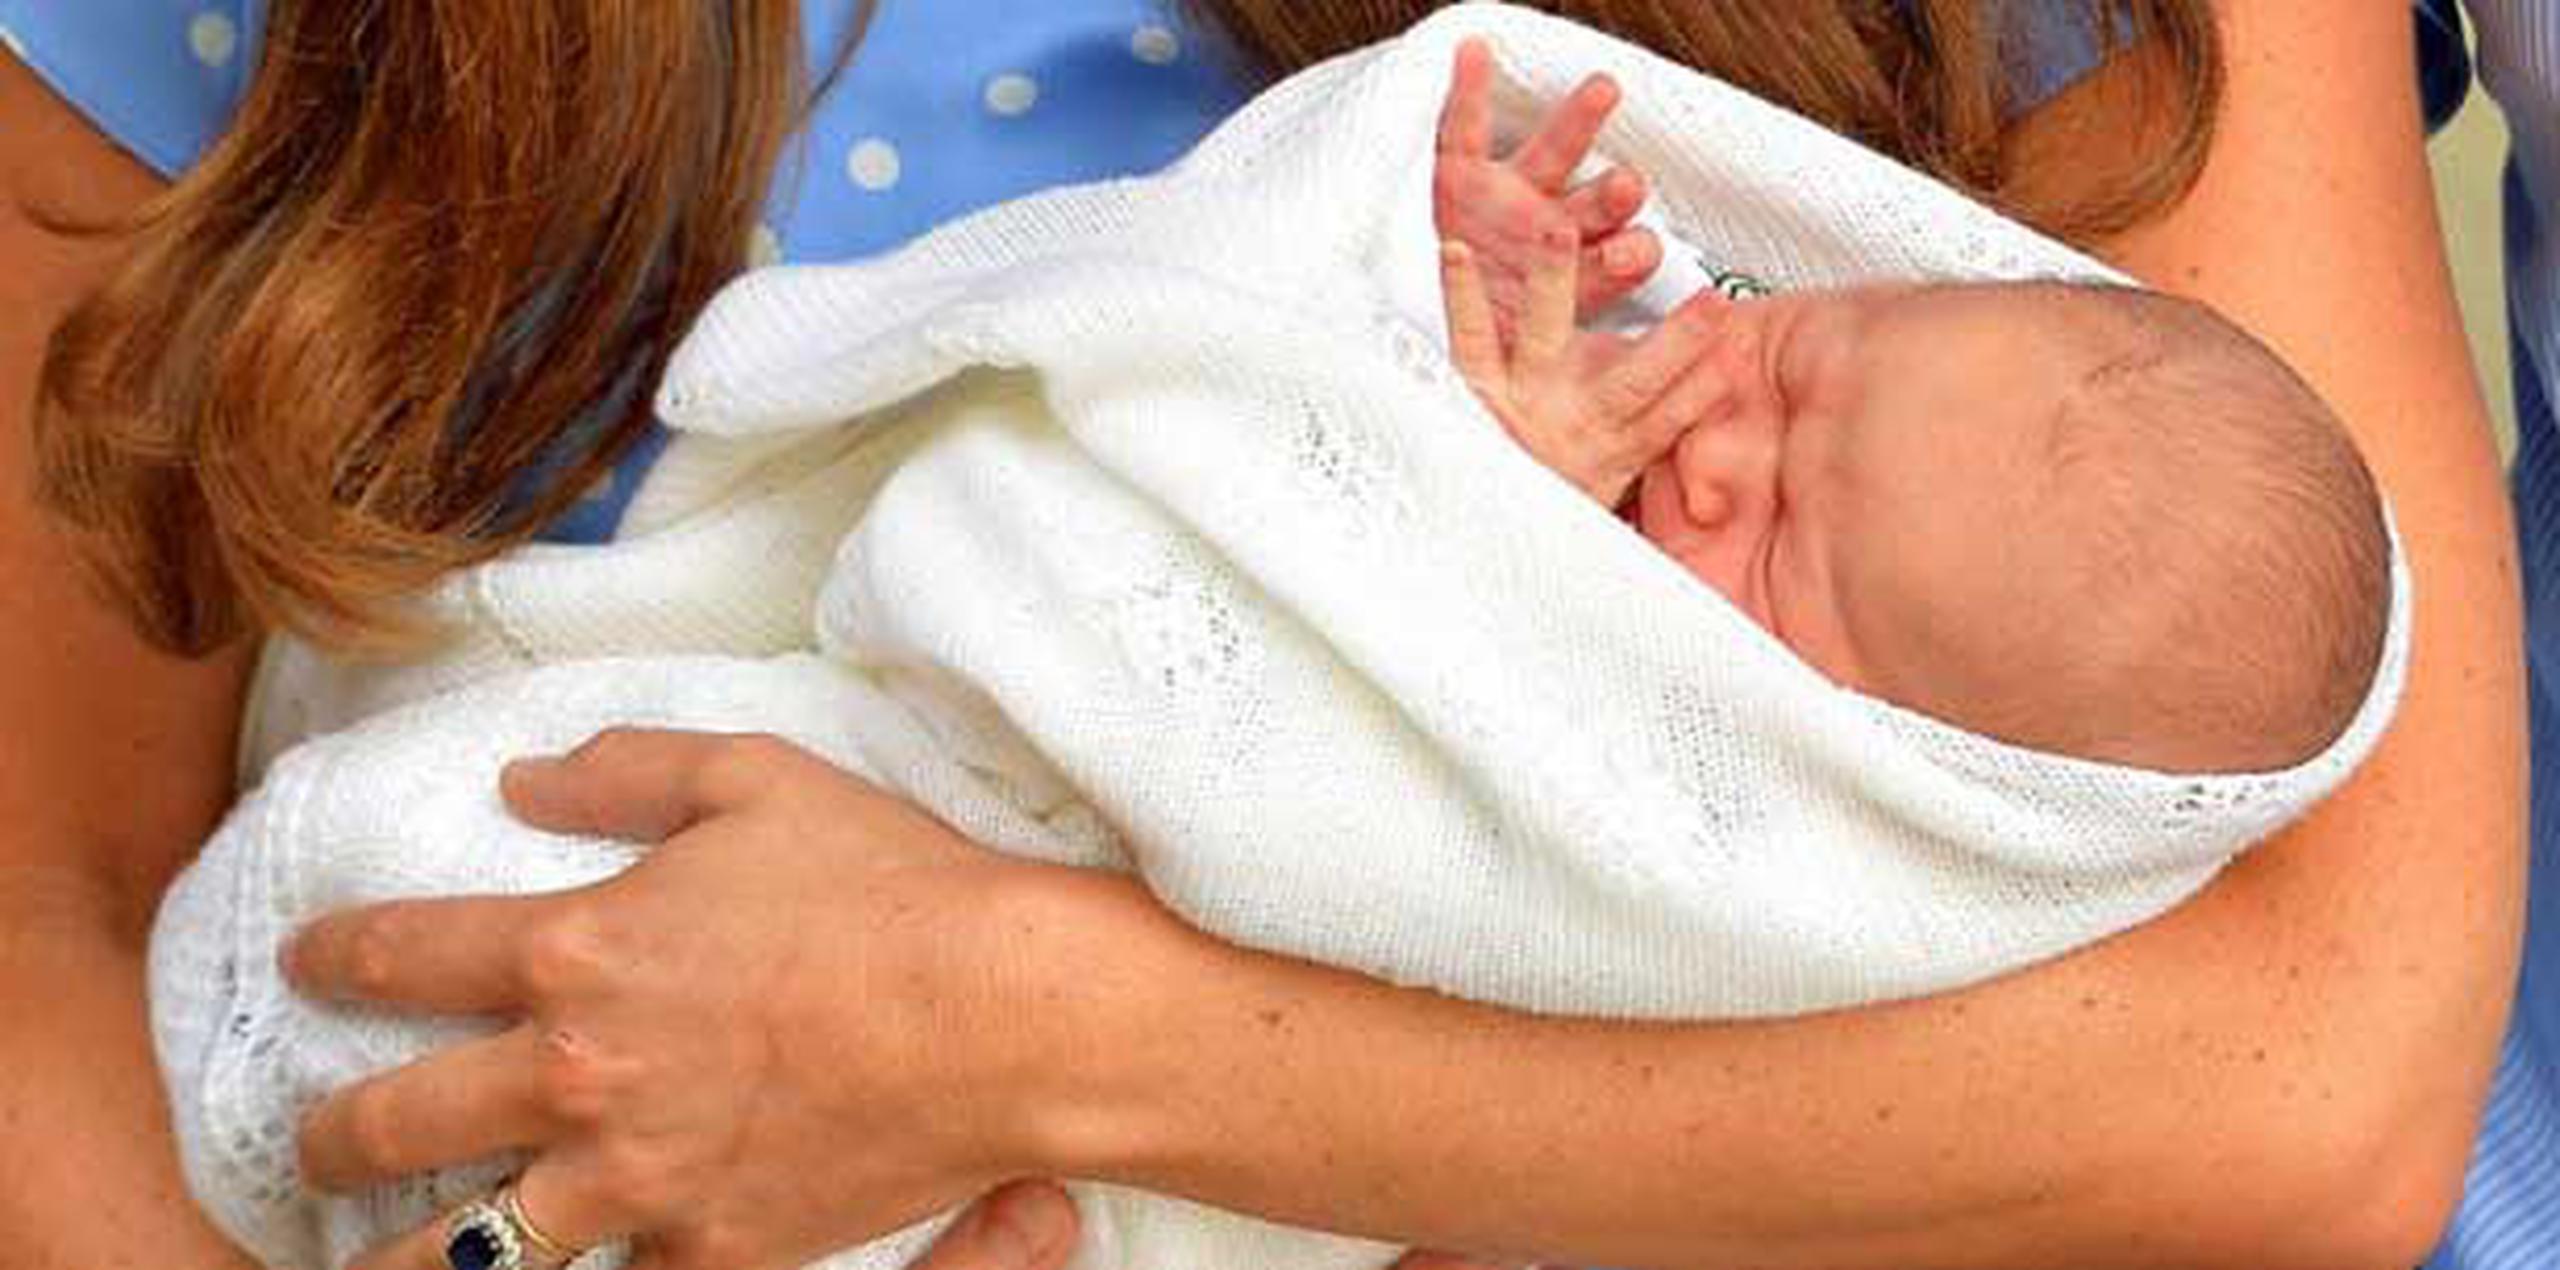 Las imágenes del bebé, que asomaba su mano sobre la manta que lo envolvía, cubrieron el miércoles las primeras planas de los diarios.  (AFP/ Pool/ John Stillwell)